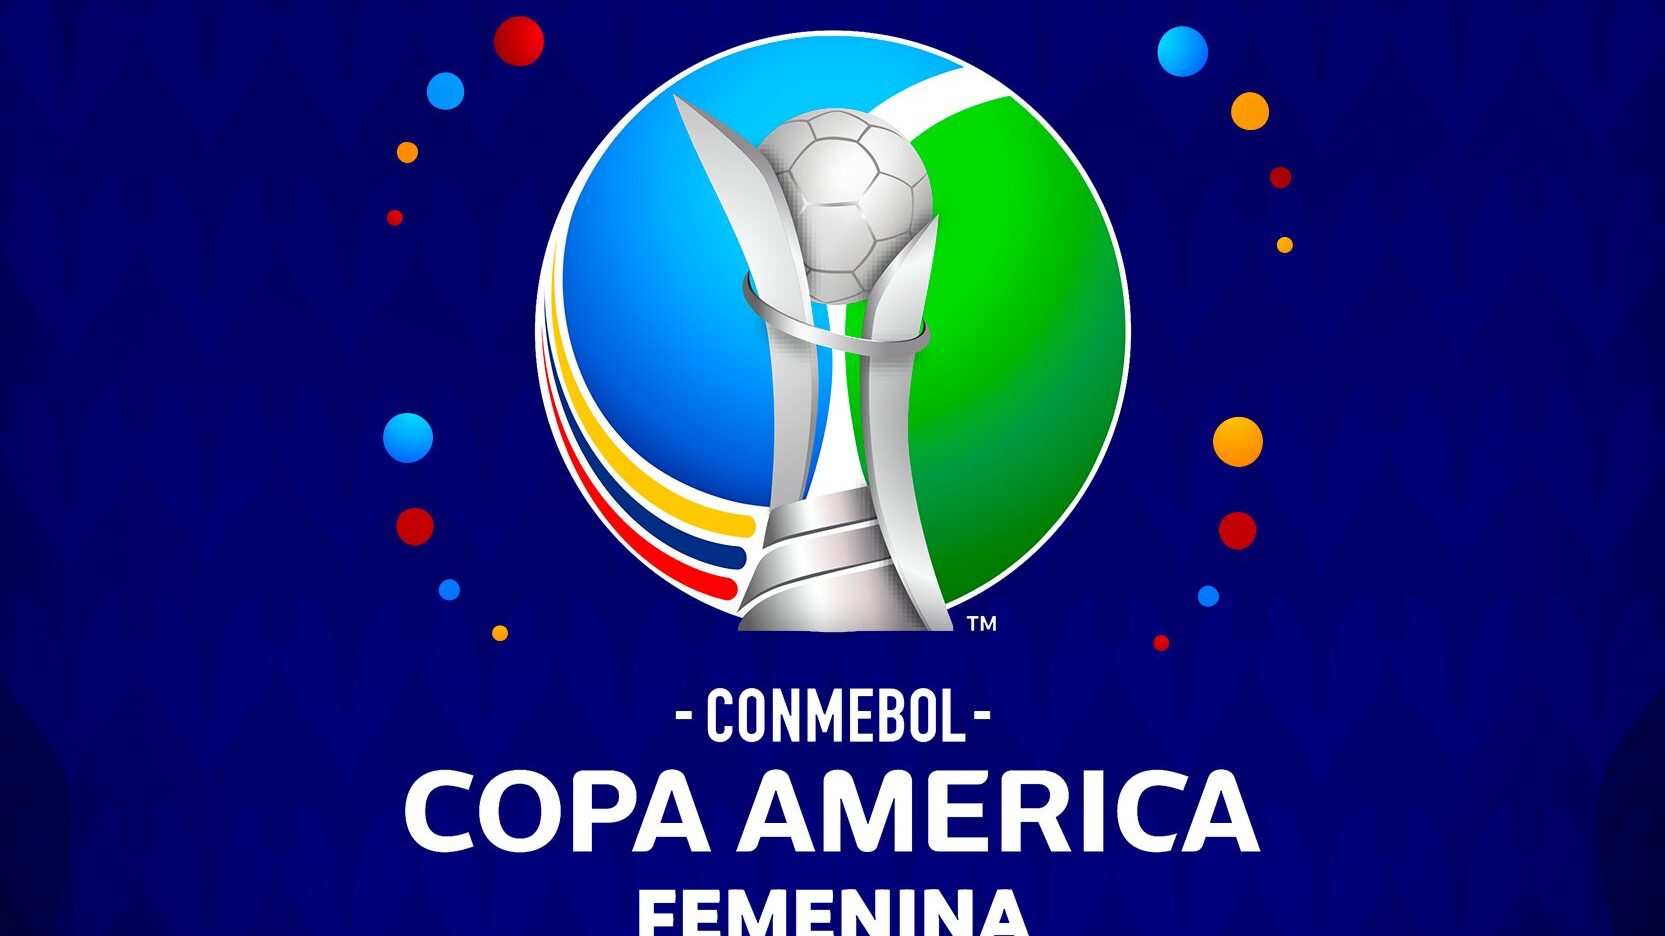 La Copa América Femenina 2022 tendrá premios millonarios para la campeona